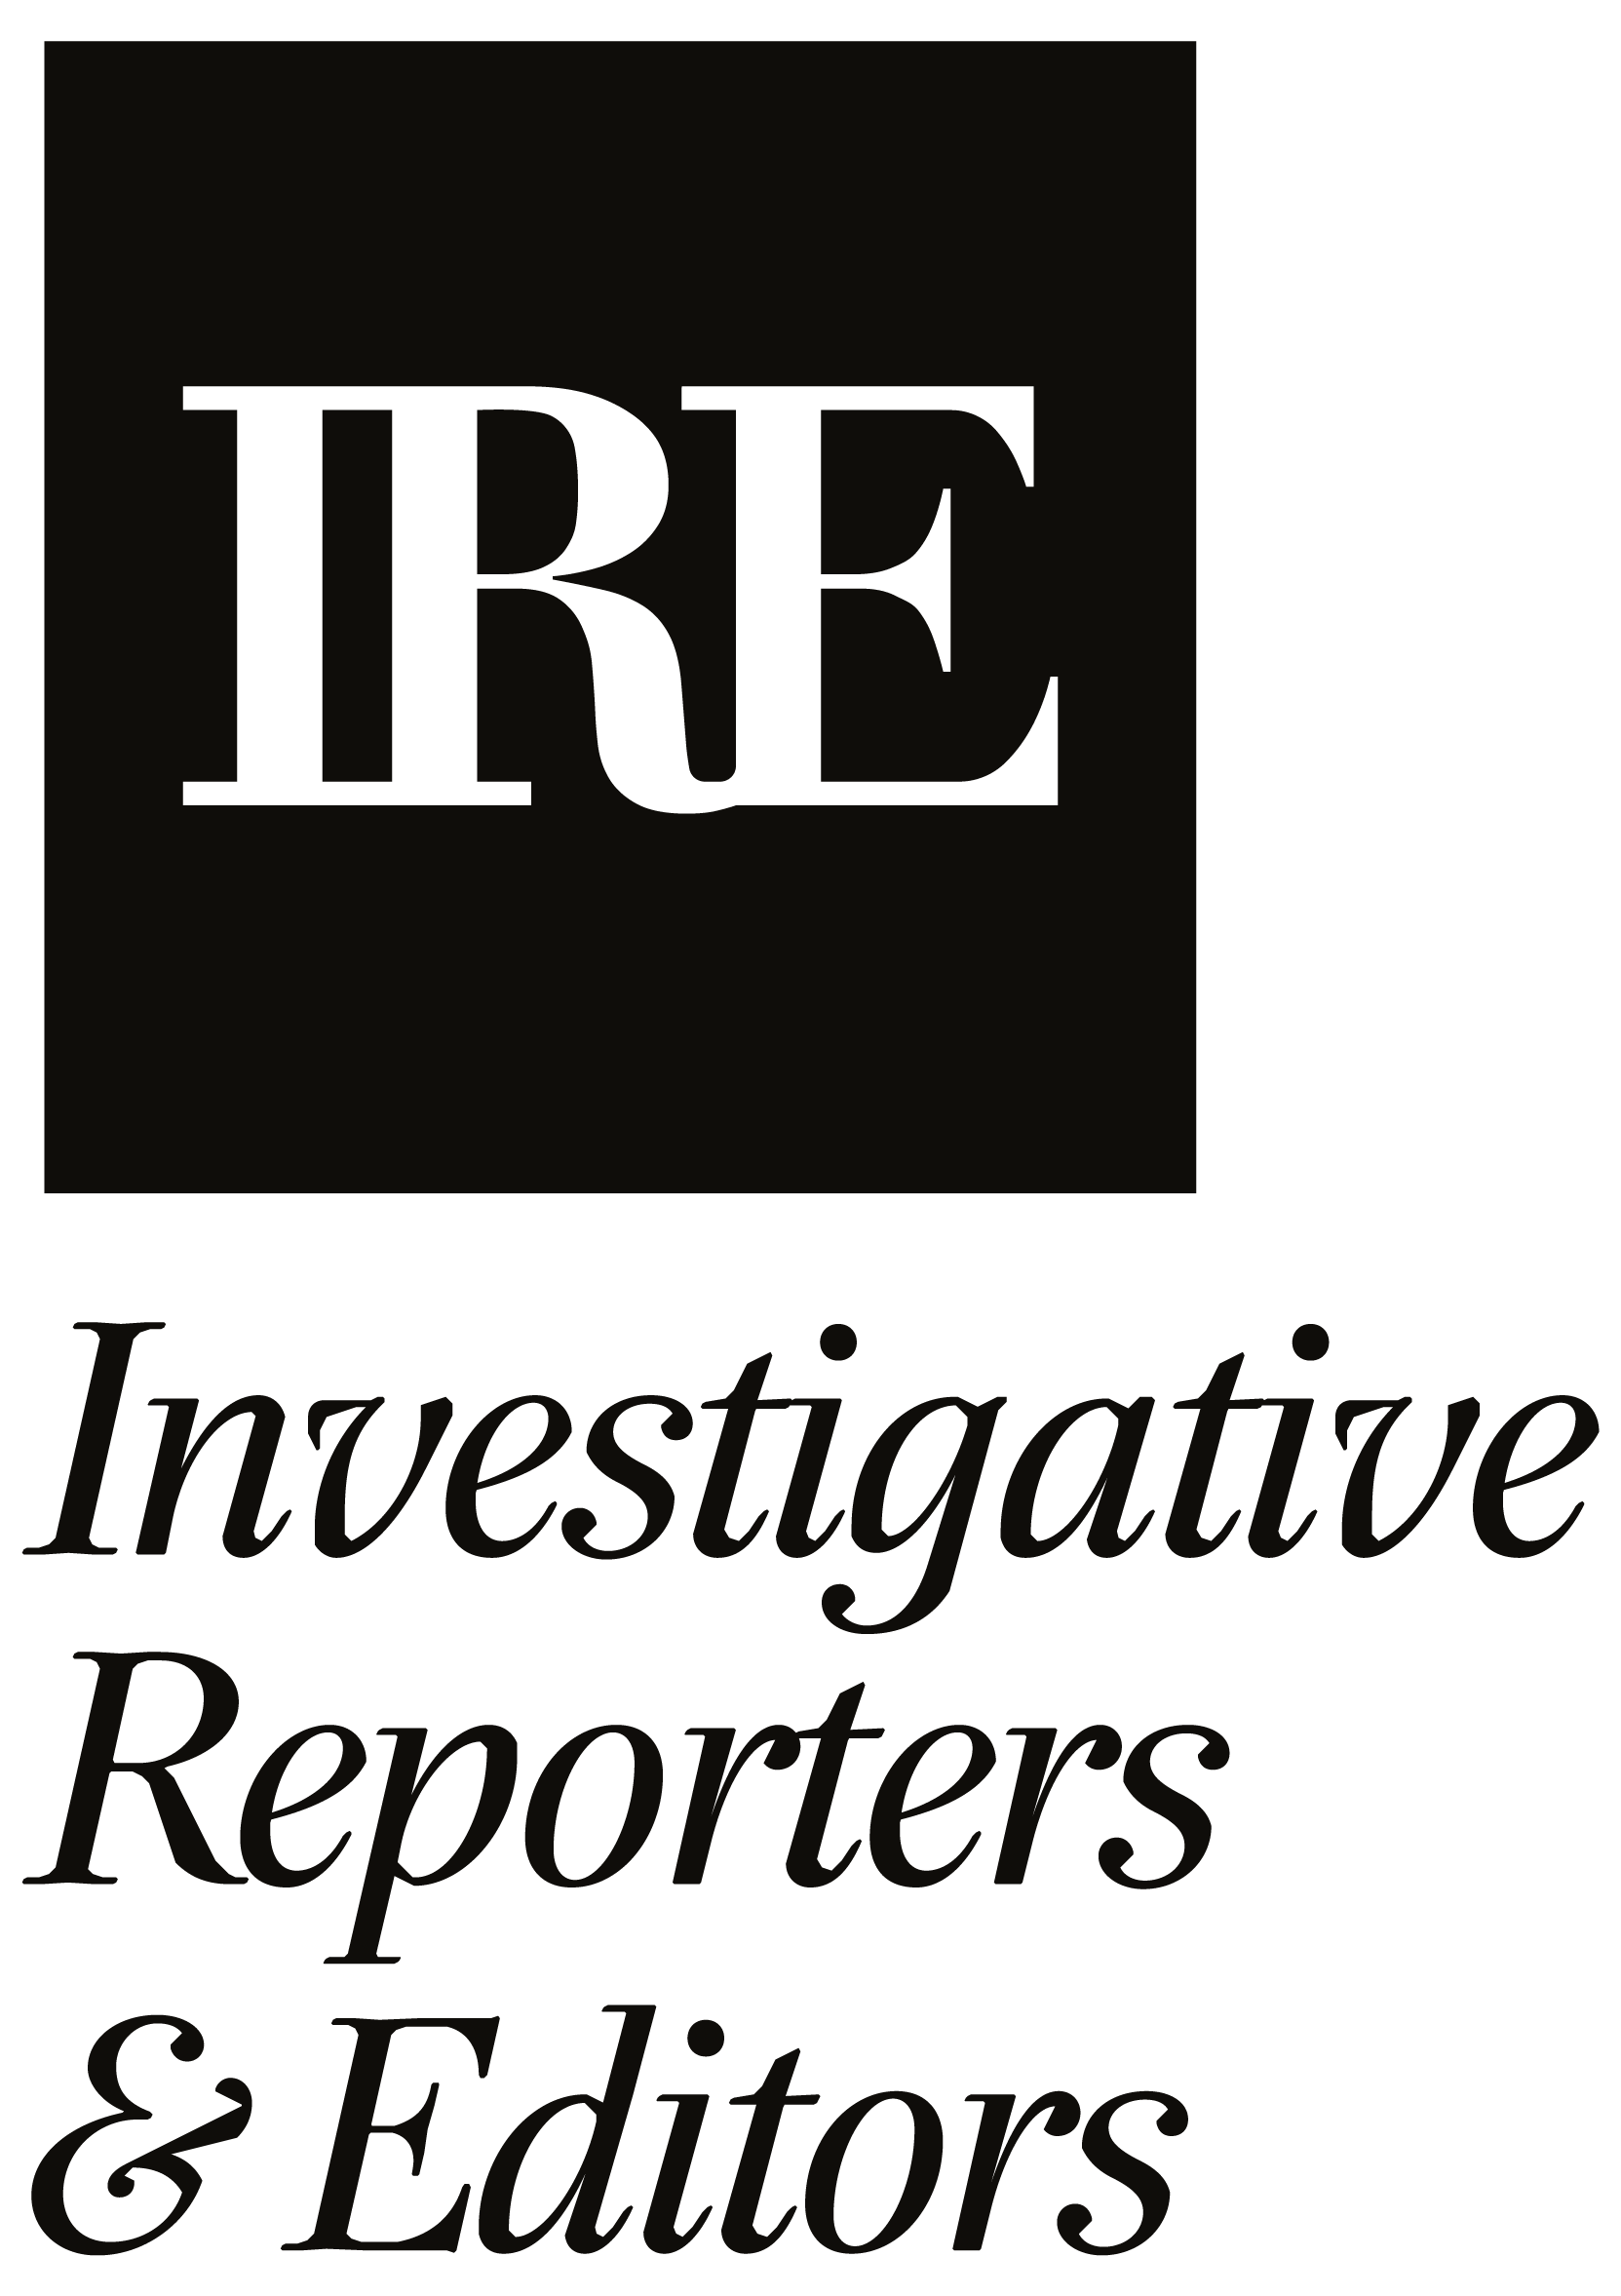 Investigative Reporters & Editors